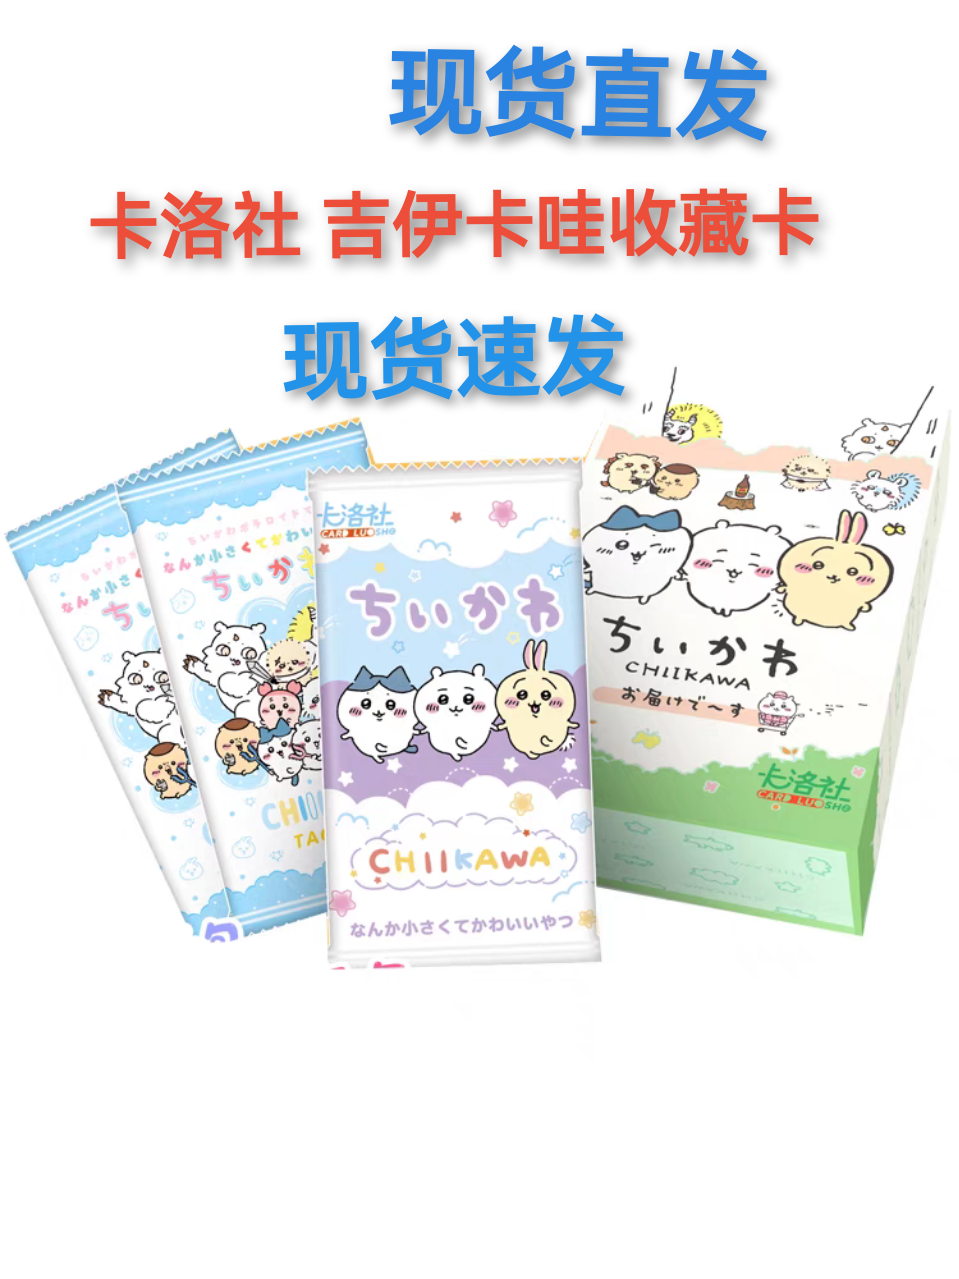 卡洛社吉伊卡哇卡片第一弹盲盒Chiikawa小可爱乌萨奇动漫收藏卡牌